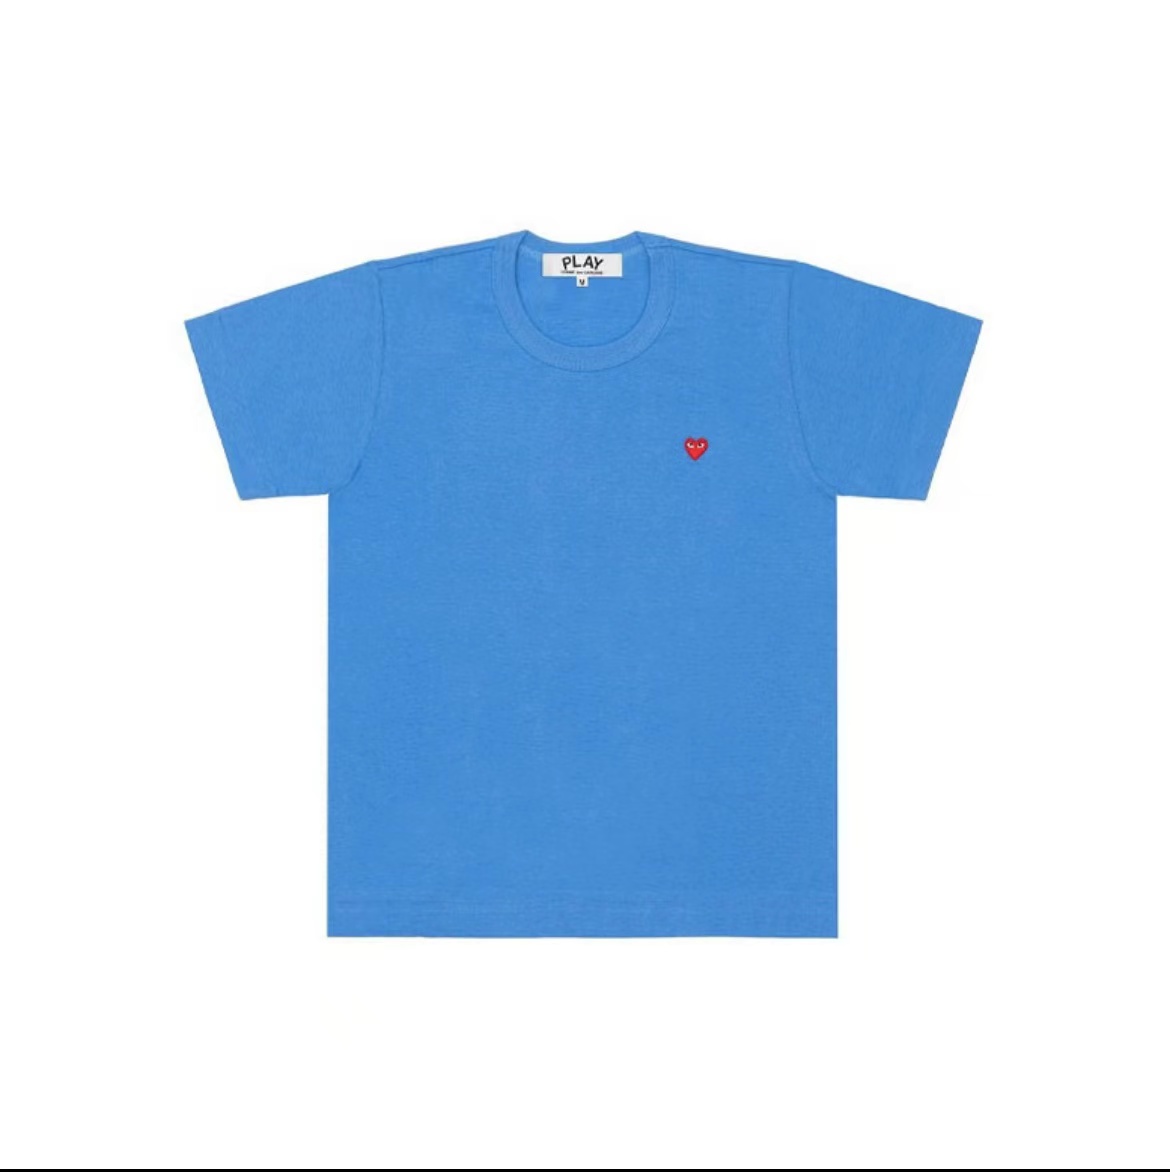 Comme des Garcons | Small Heart T-shirt 纯色圆领短袖T 恤 女款蓝色AZ-T313-051（澳门仓发货）商品图片,8.1折×额外8.5折, 额外八五折